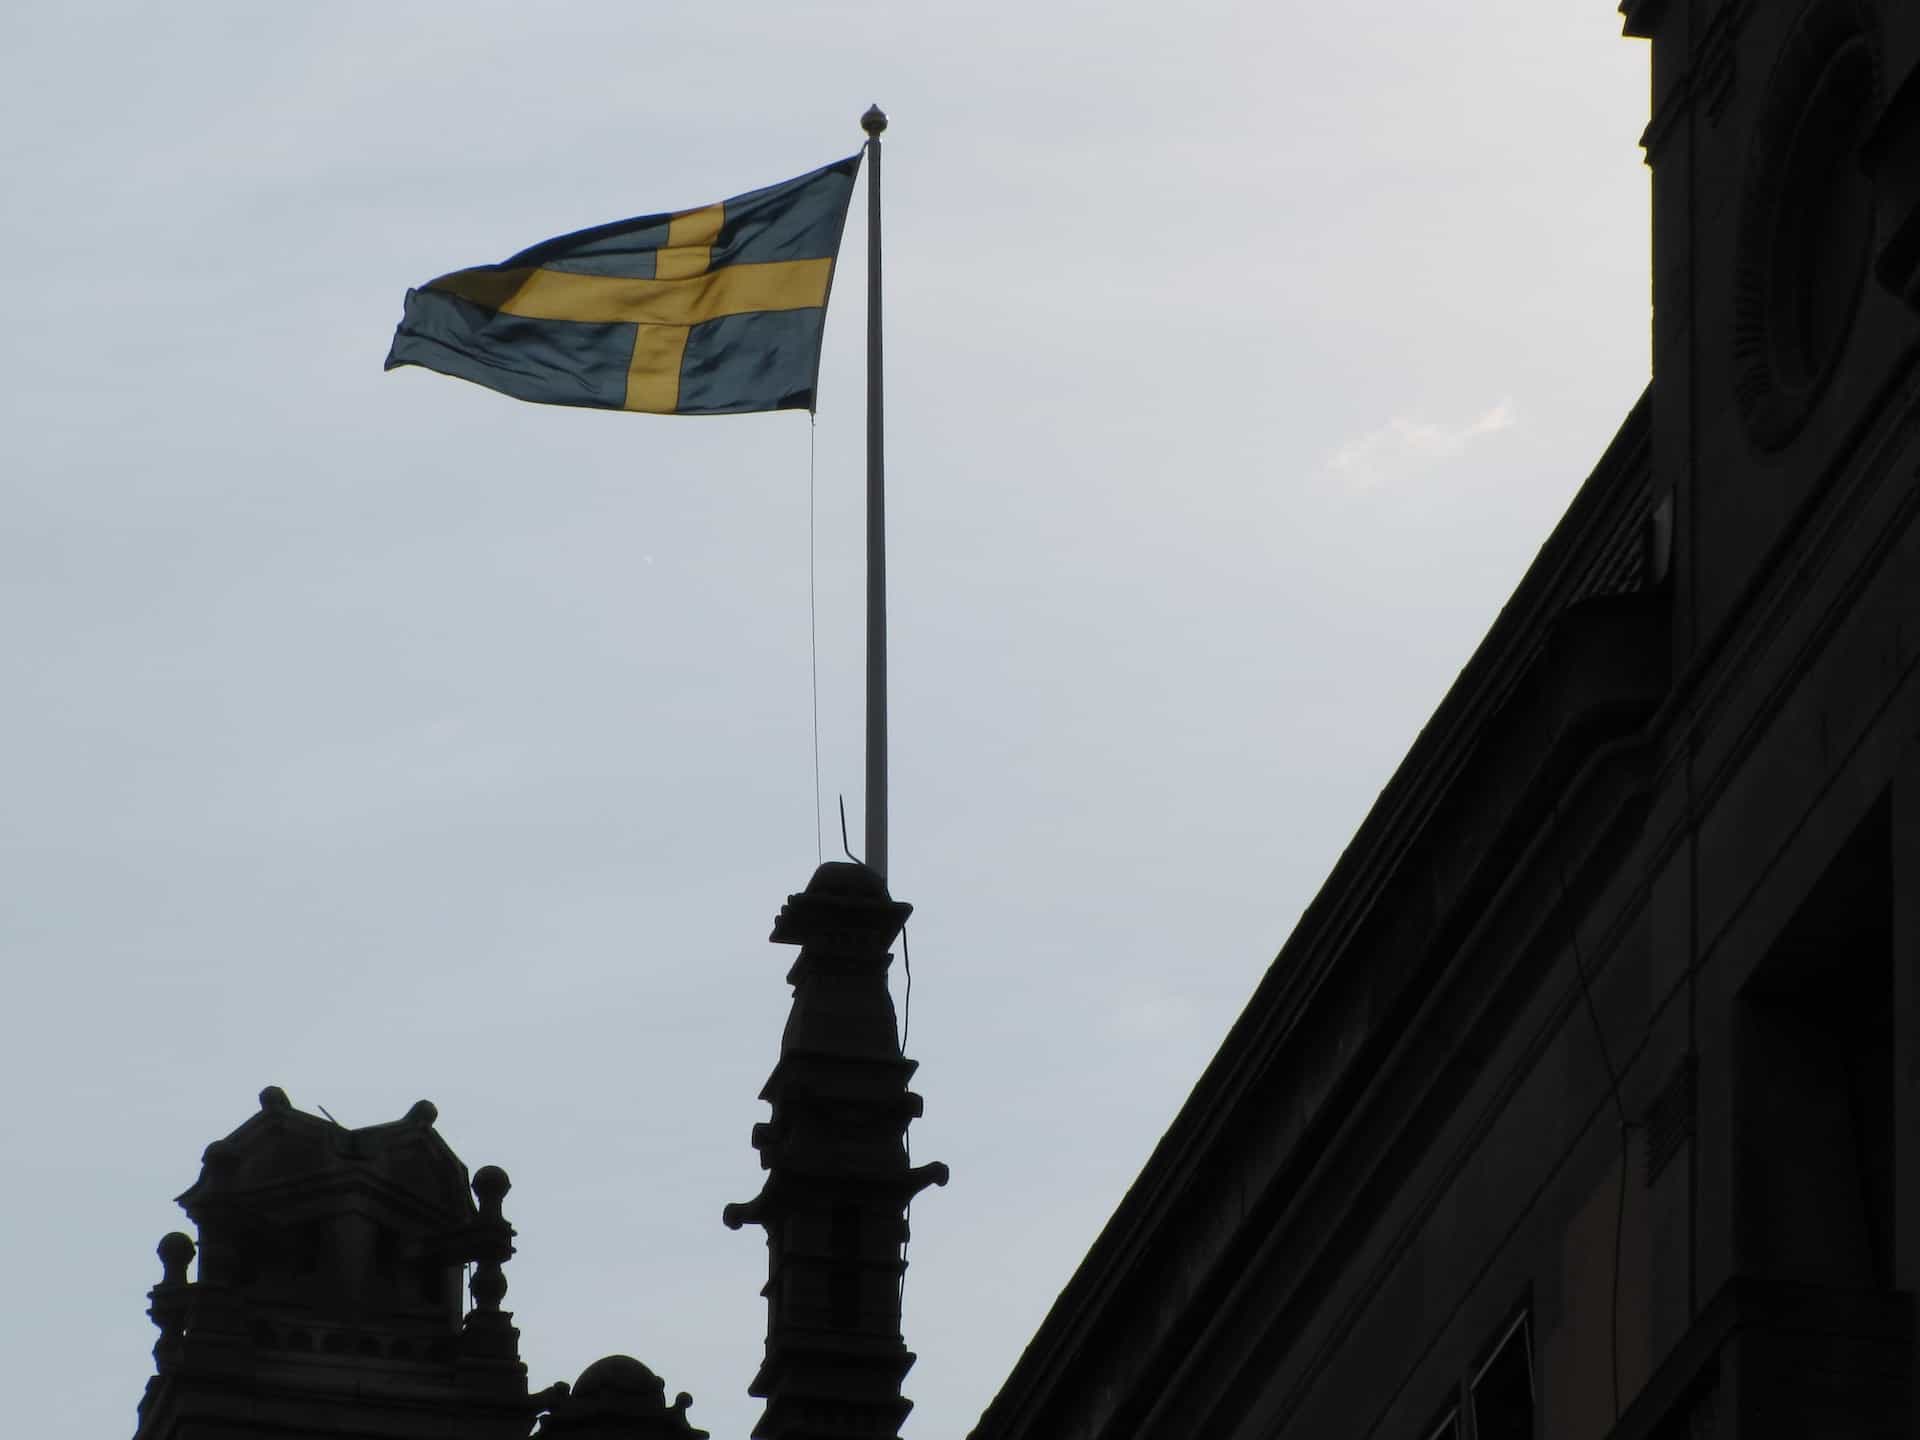 Sebuah bendera dikibarkan di atas sebuah bangunan di langit biru.